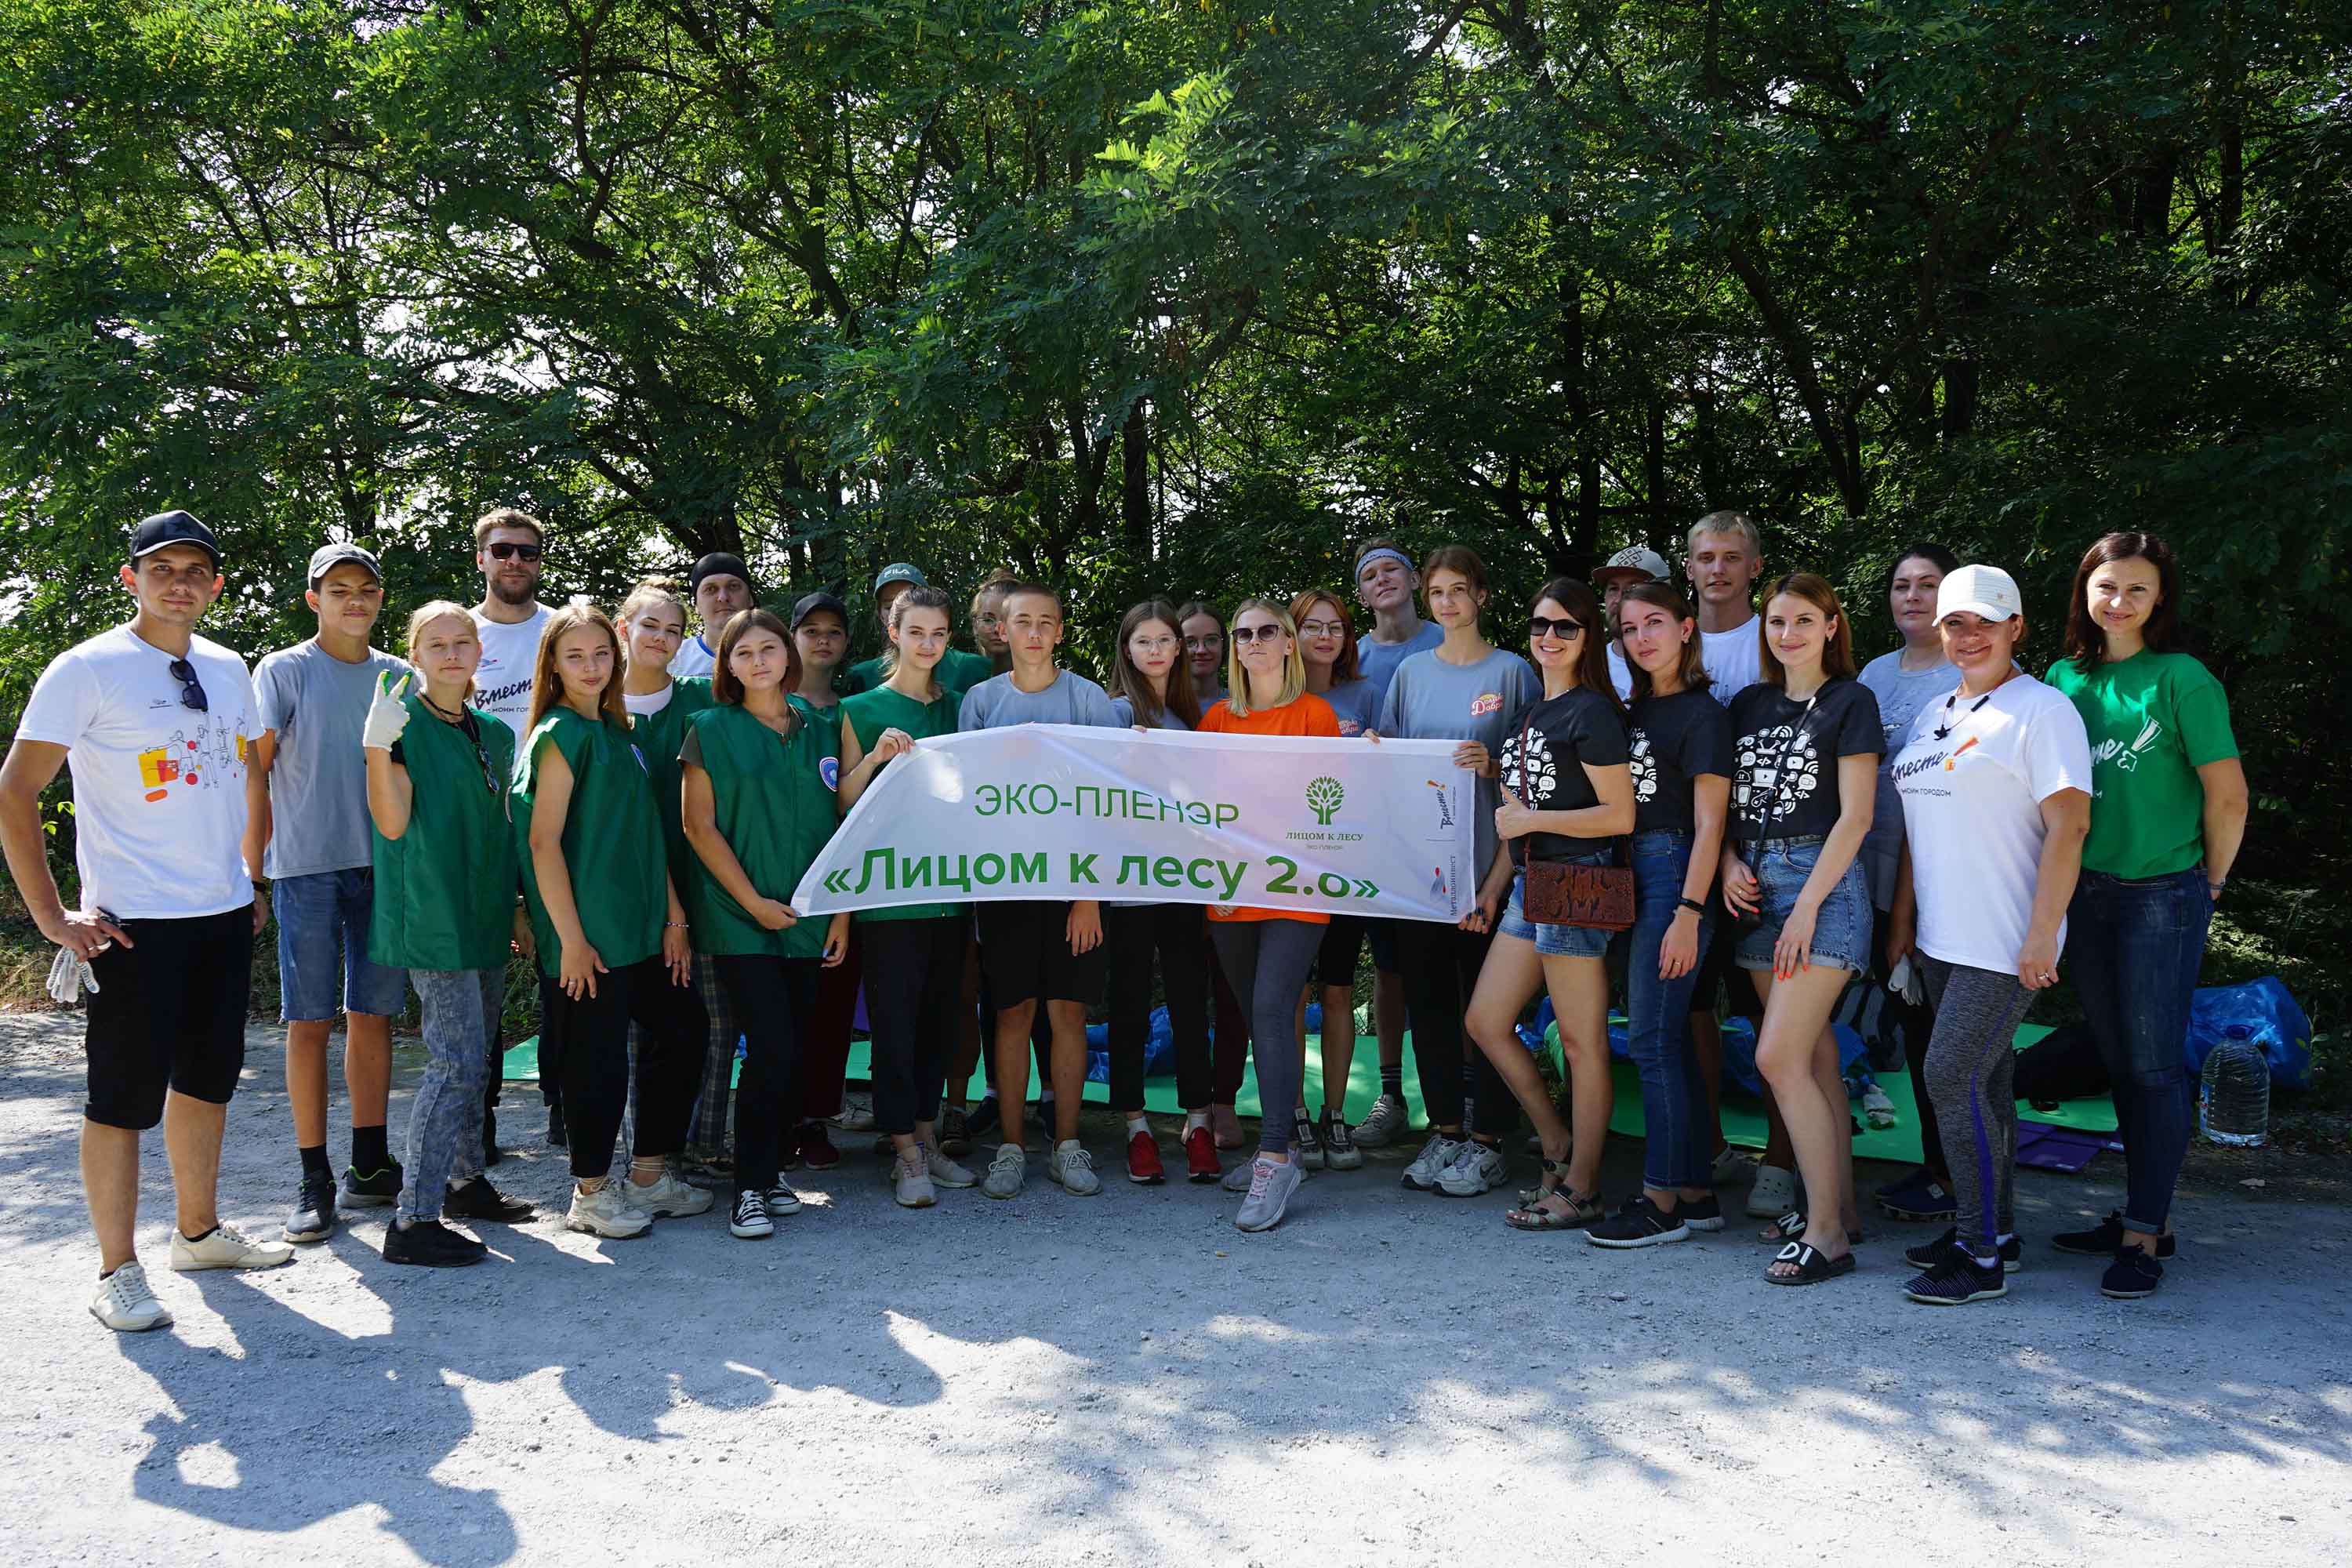 Волонтёры эко-пленэра «Лицом к лесу 2.0» очистили территорию Обуховского лесничества от мусора